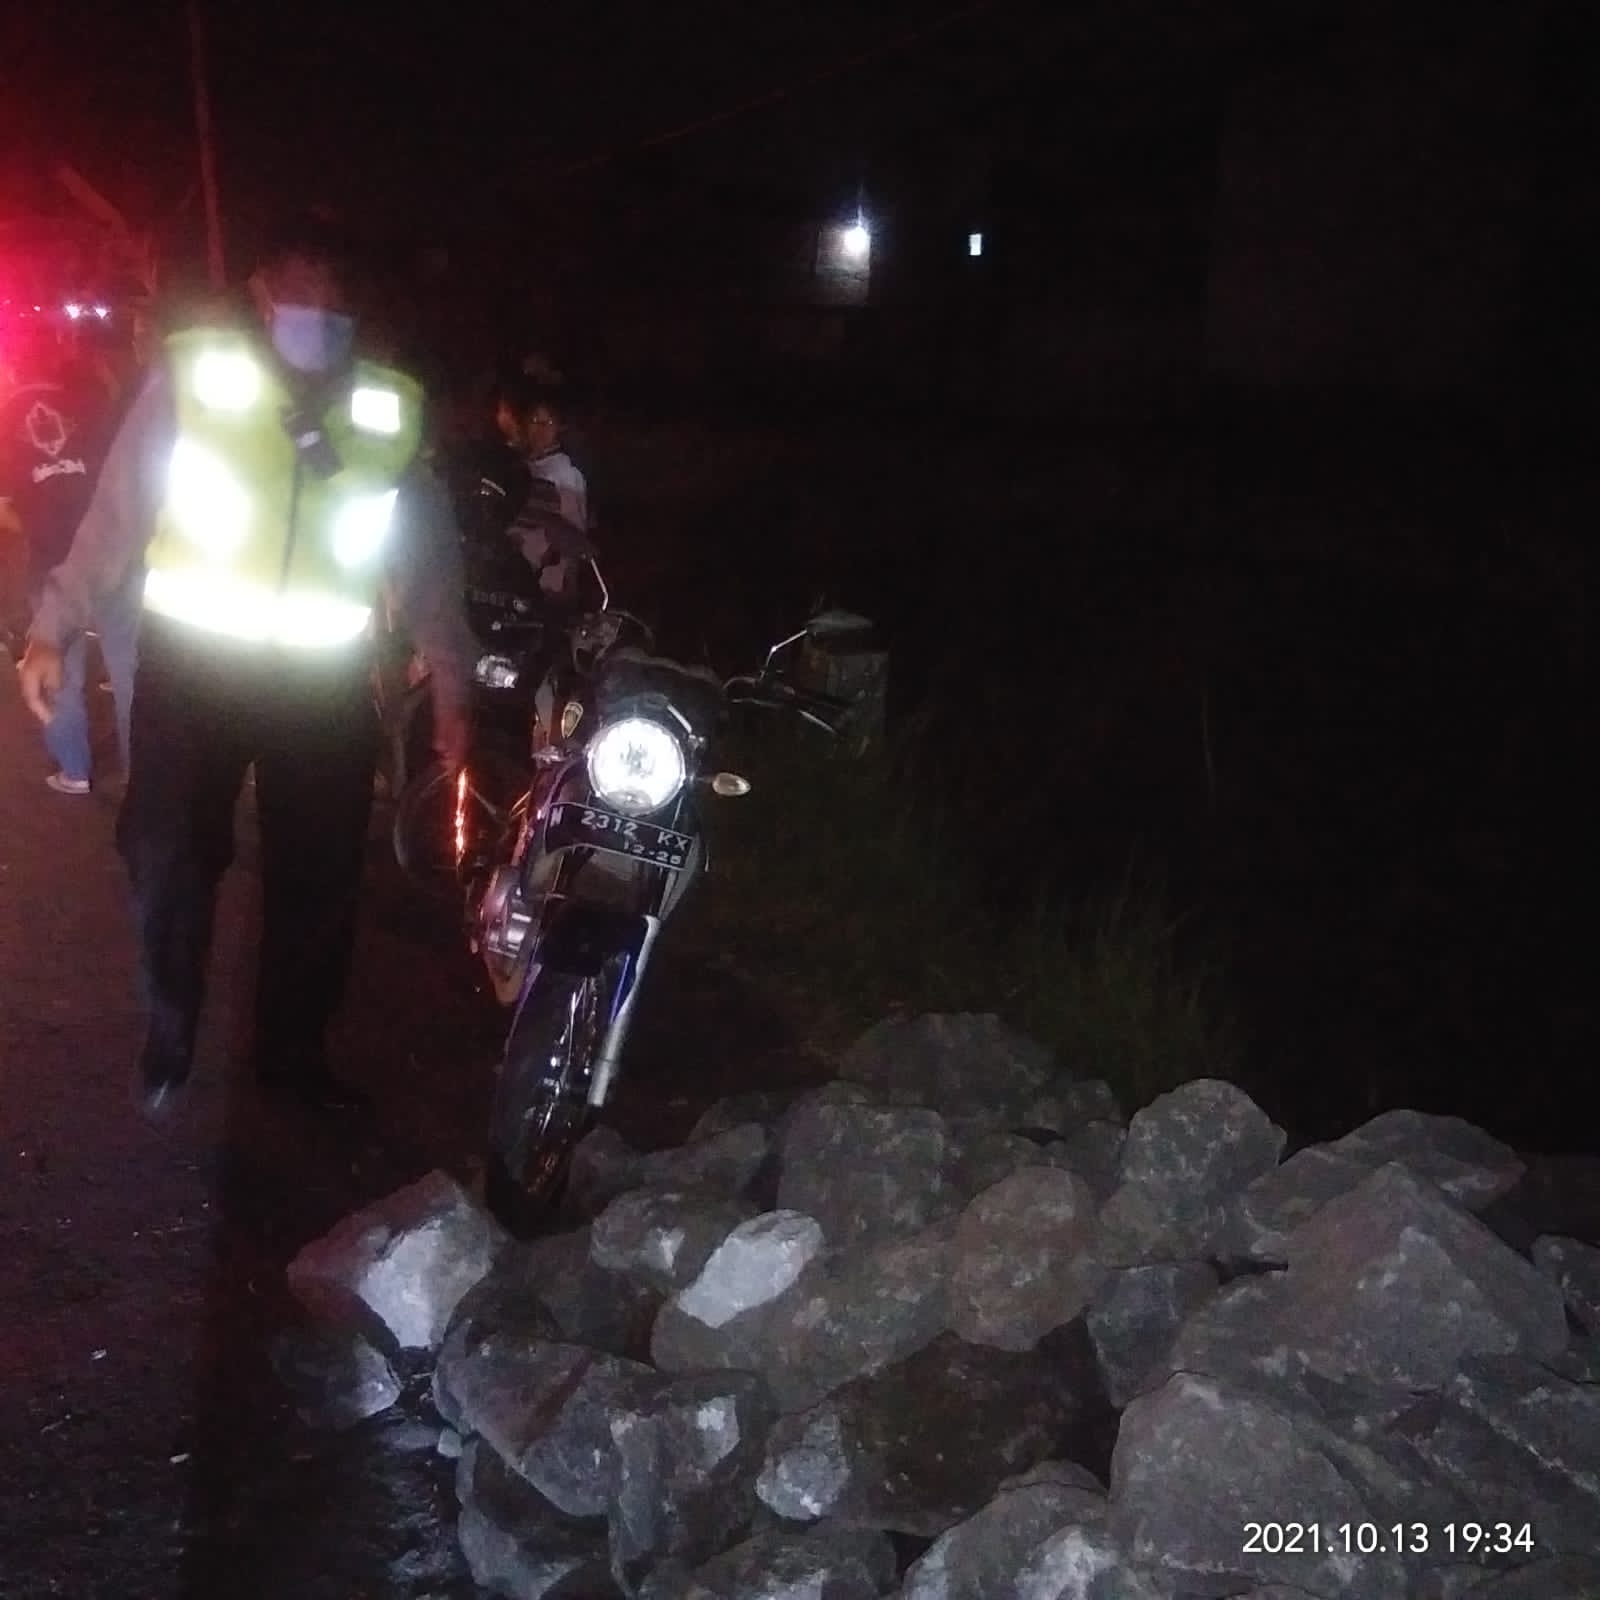 Tempat kejadian perkara (TKP) tewasnya biker asal Kota Batu setelah menabrak tumpukan material di Singosari, Kabupaten Malang. (Foto: Istimewa/Tugu Jatim)